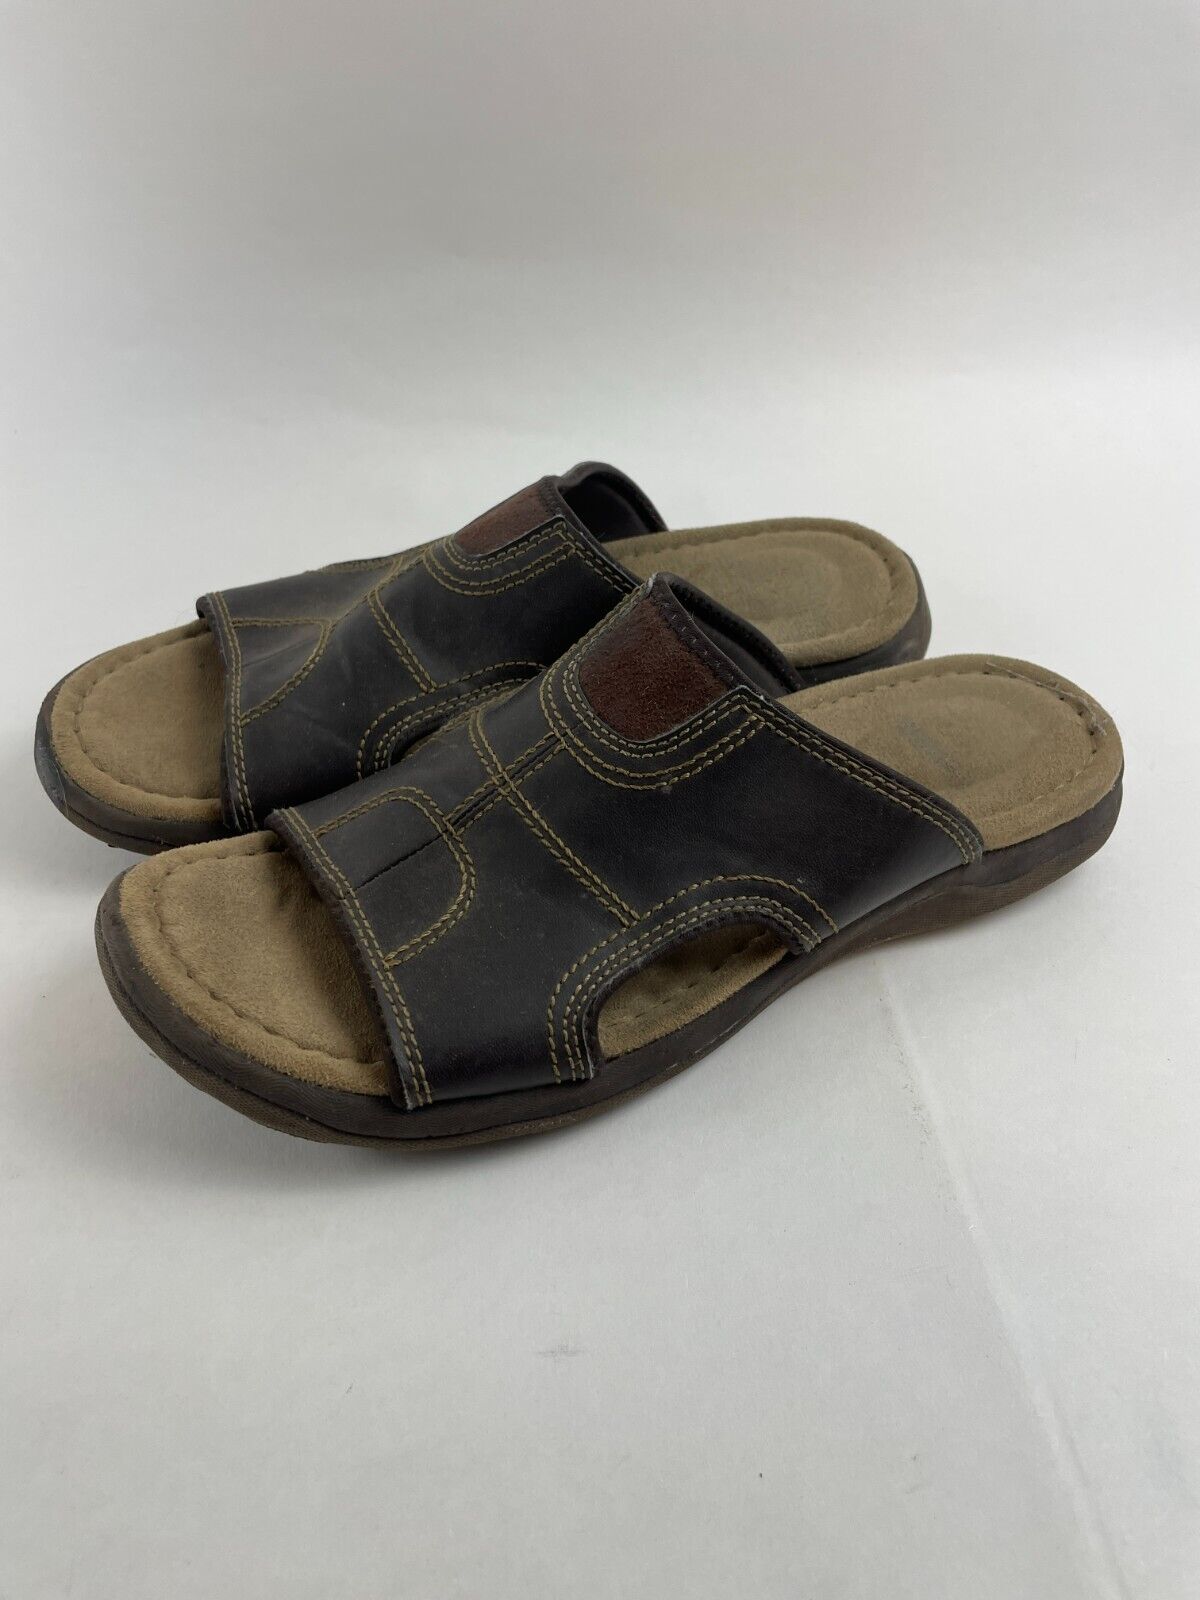 Wrangler Sandals, Men's Size 12, Brown Leather, Slip on Slides | eBay